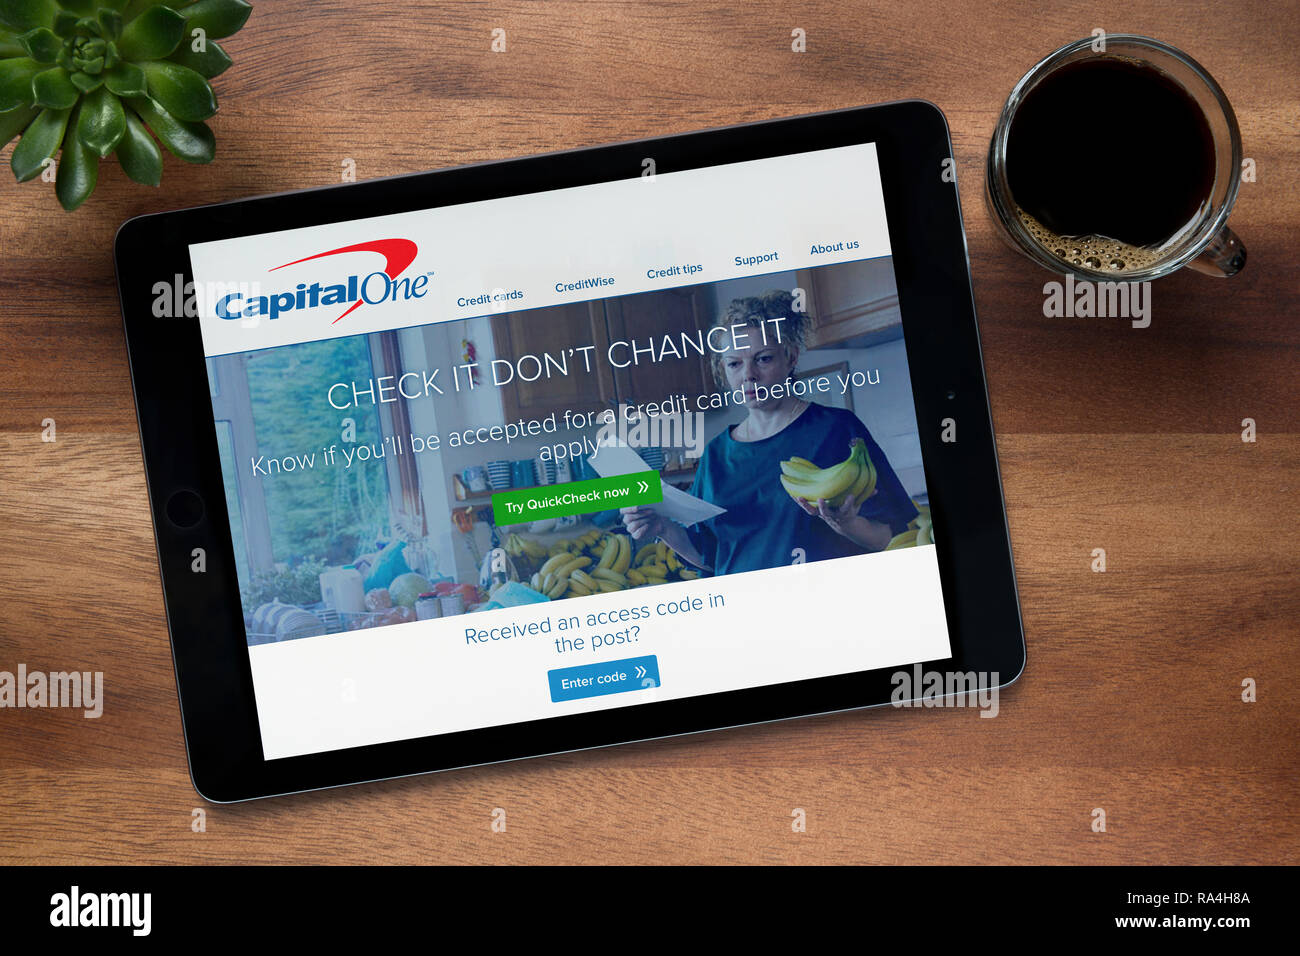 Le site internet de Capital One est vu sur un iPad tablet, sur une table en bois avec une machine à expresso et d'une plante (usage éditorial uniquement). Banque D'Images